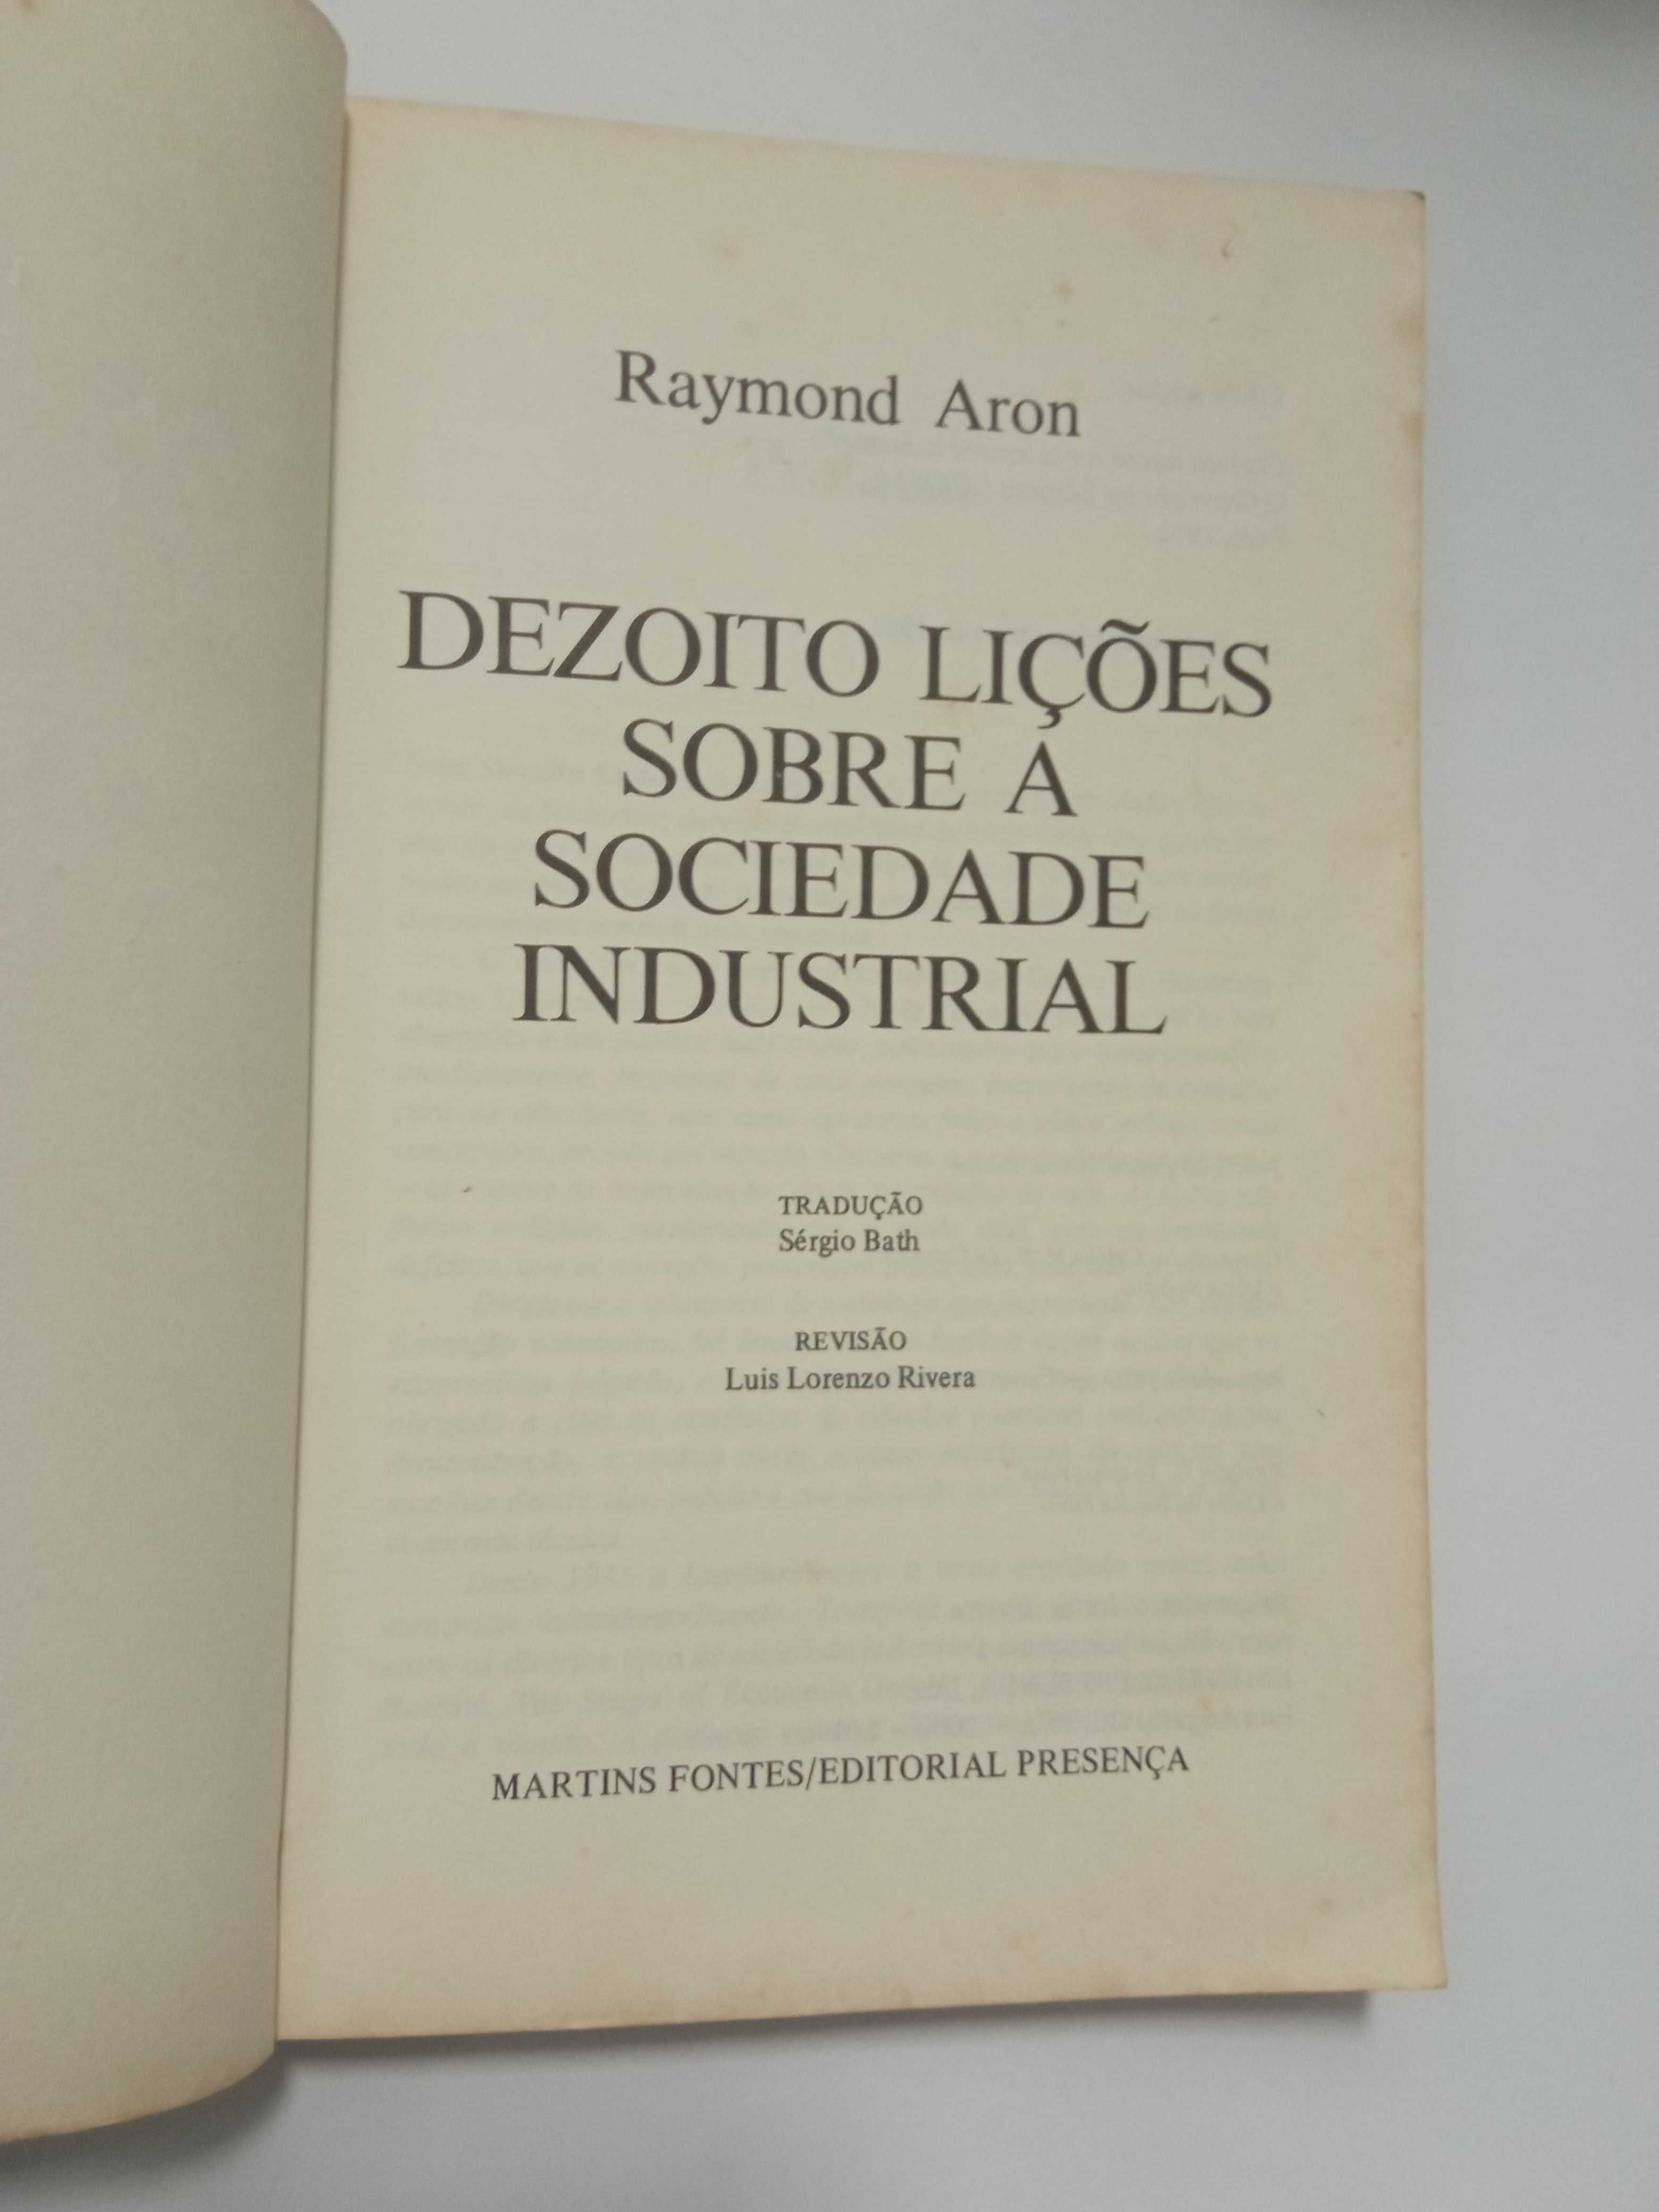 Dezoito lições sobre a sociedade industrial, de Raymond Aron